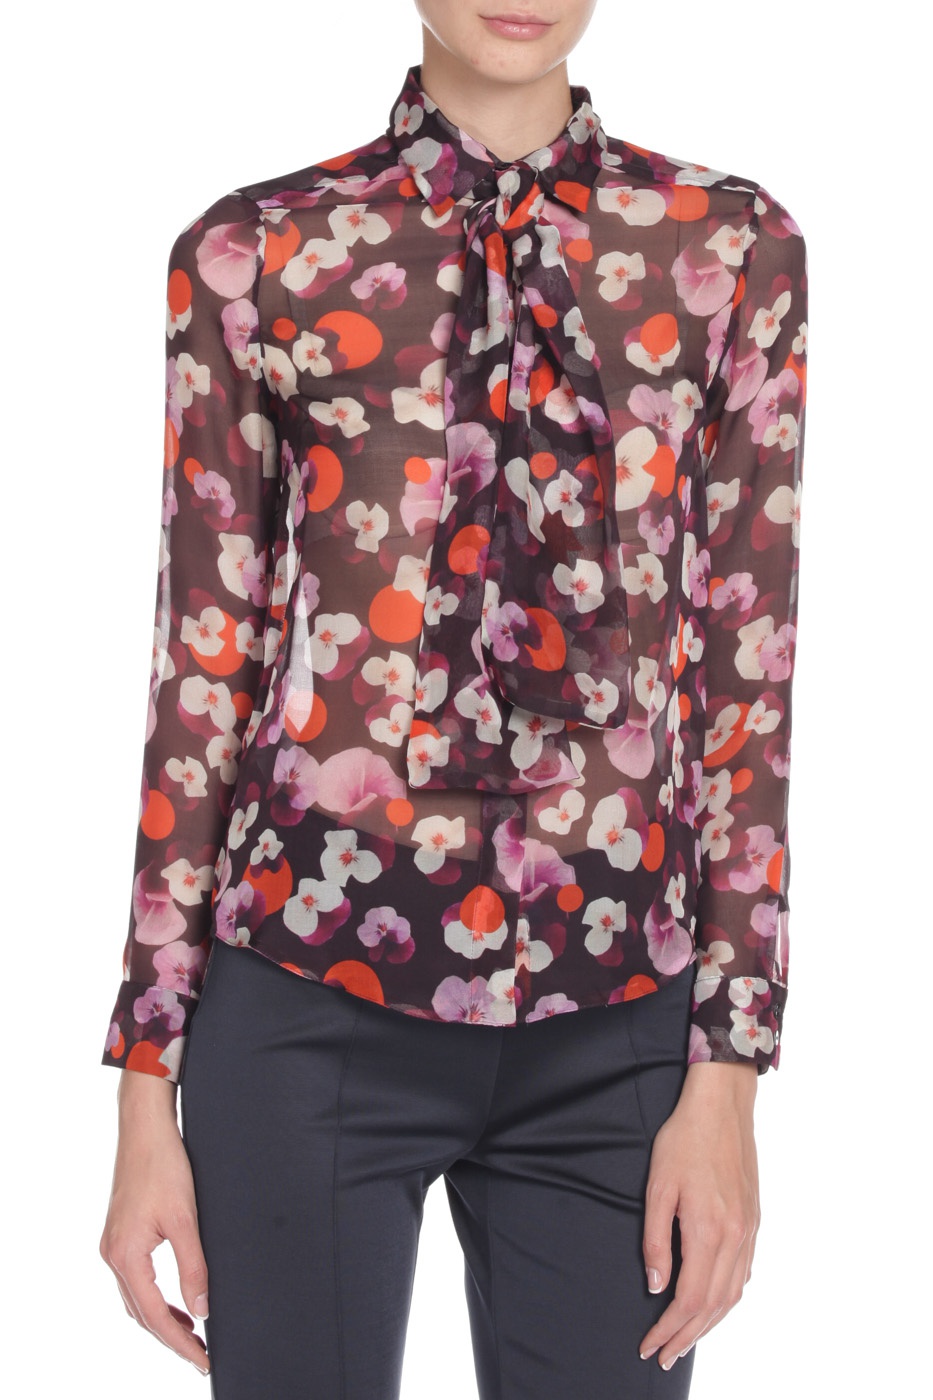 Новая блузка Caractere шёлк. 44 размер